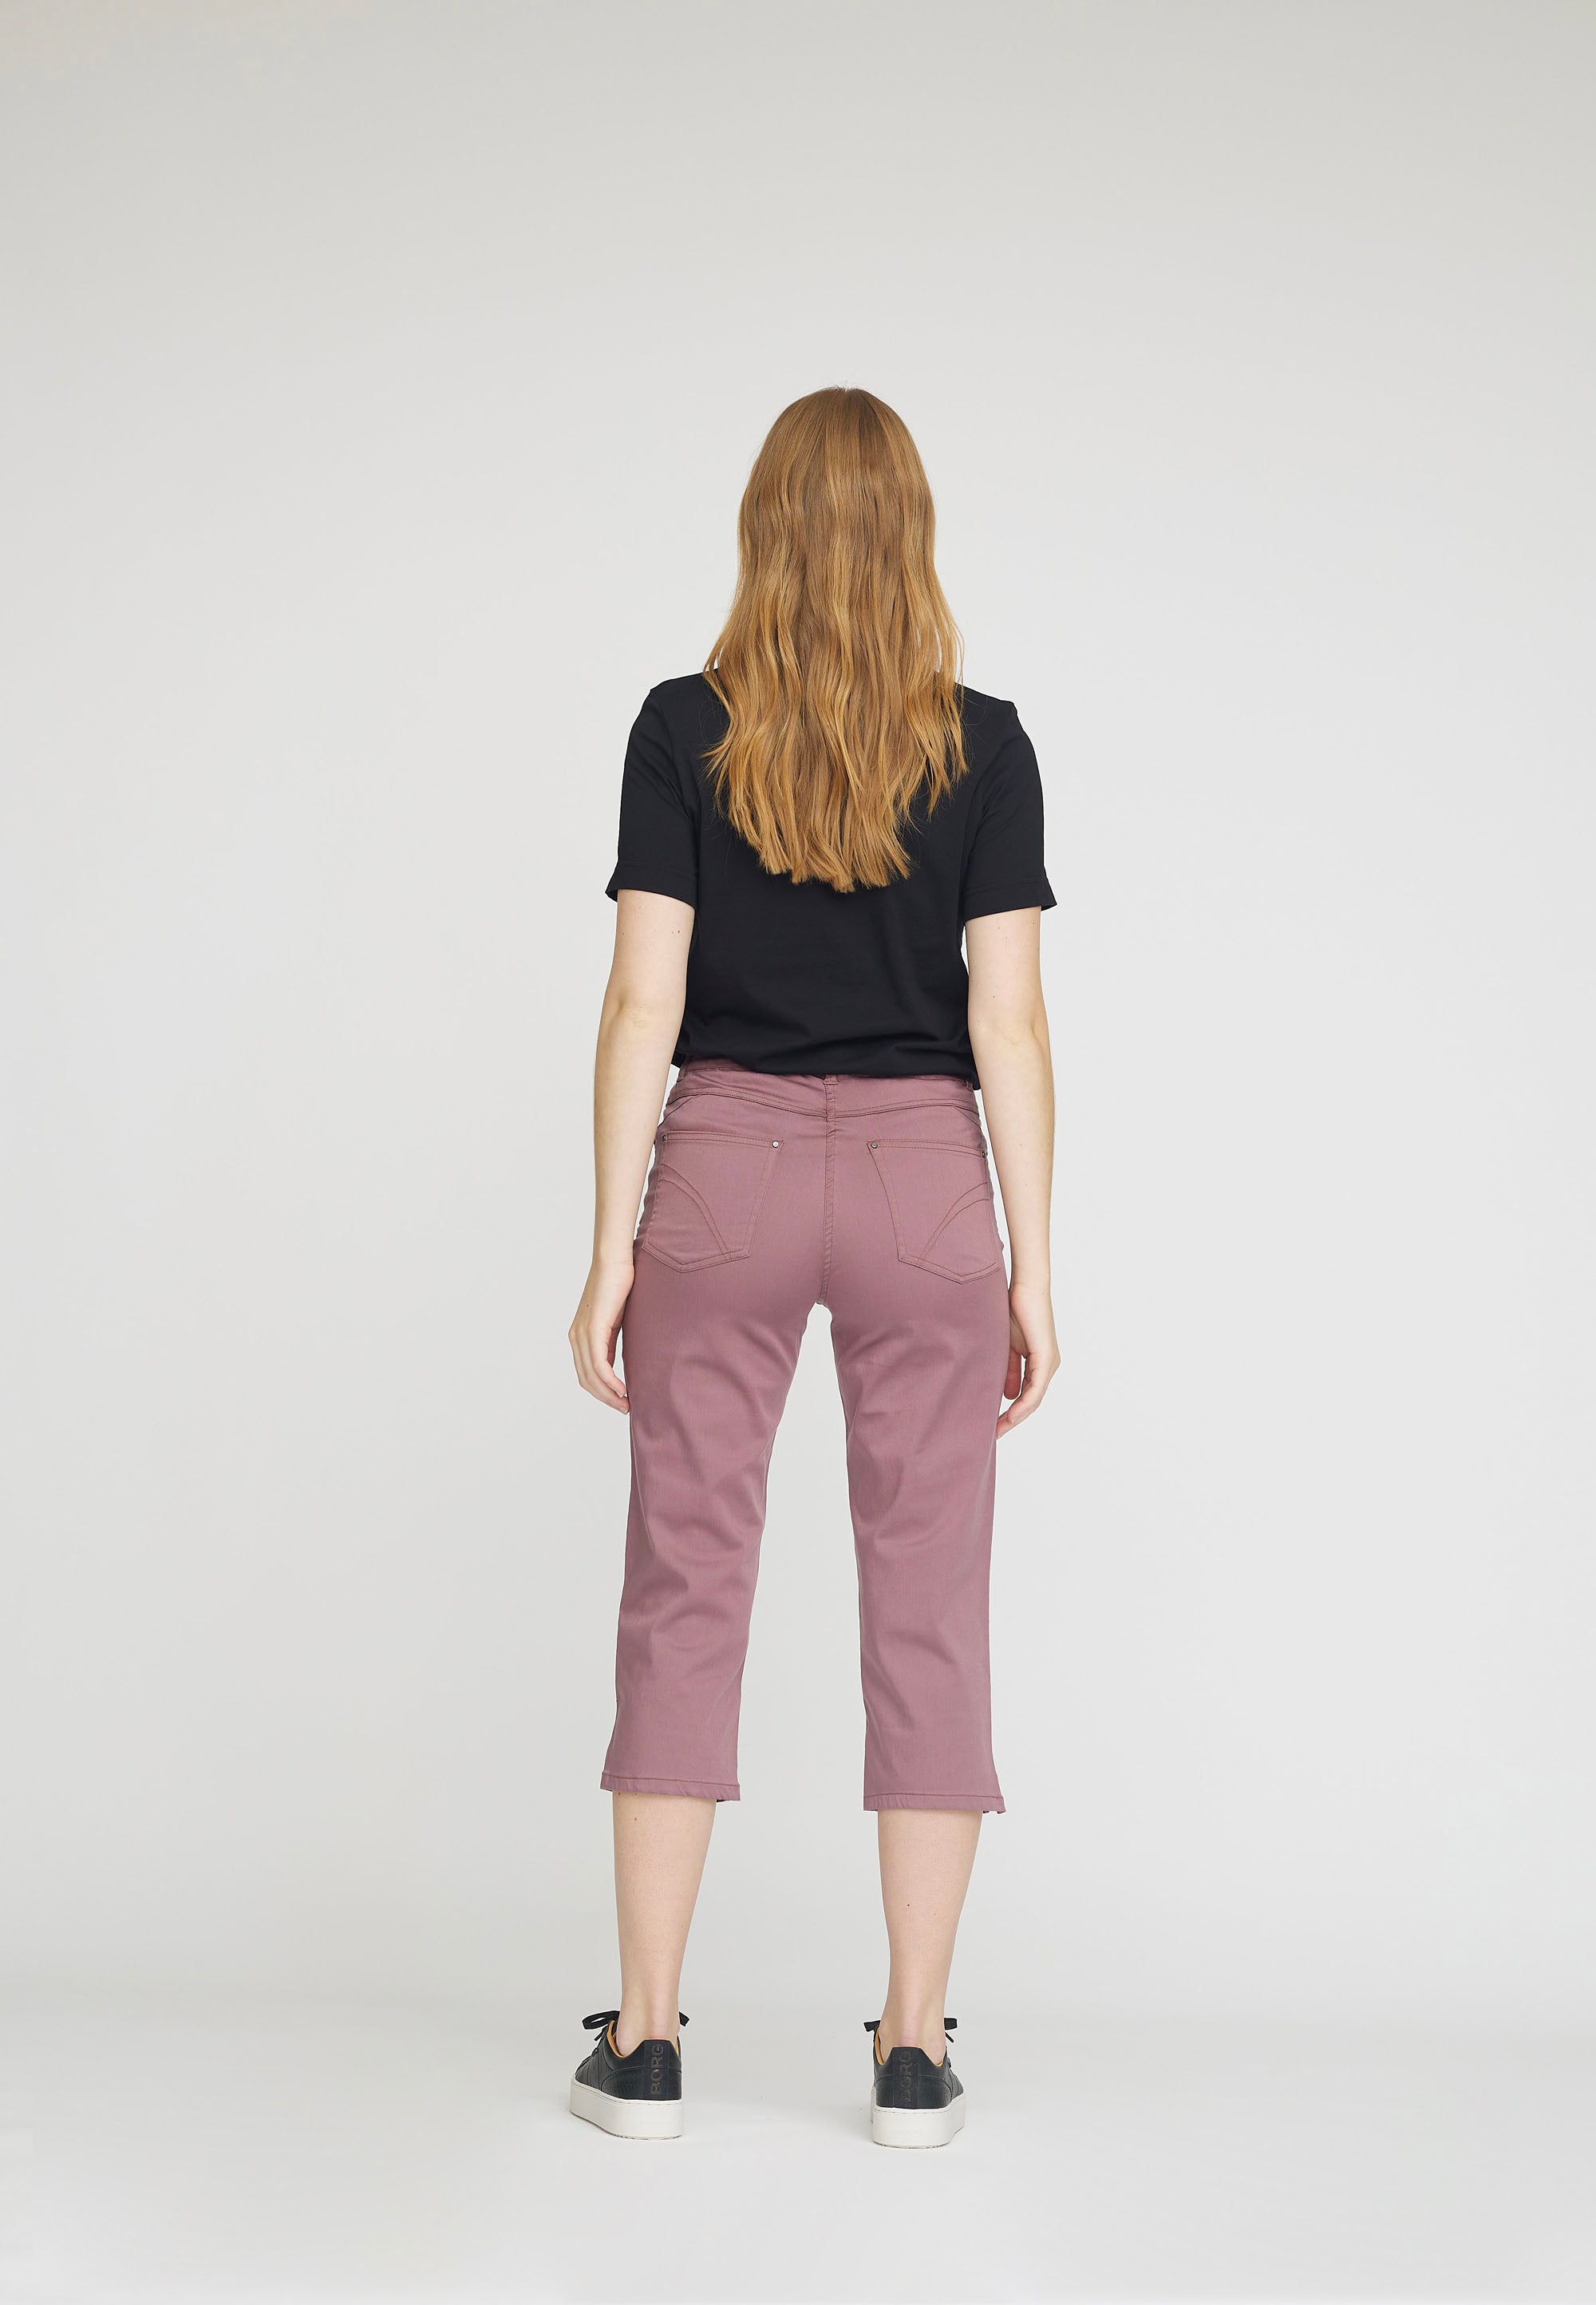 LAURIE  Hannah Regular Capri Medium Length Trousers REGULAR 32000 Faded Grape